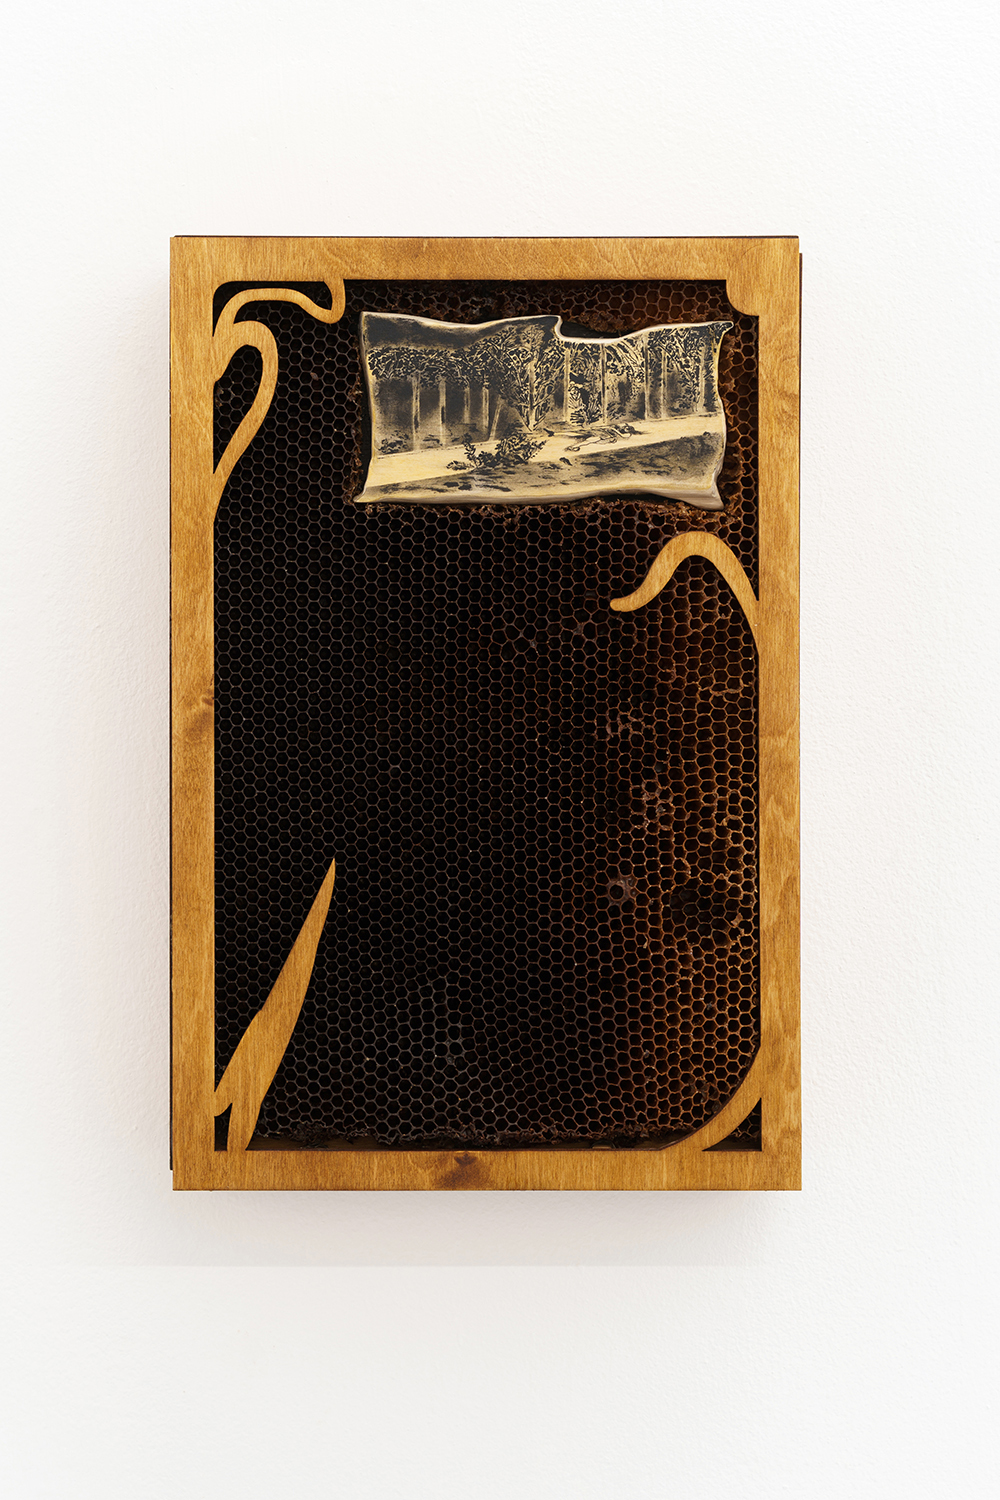  ‘Wild Rumor’, 2022, ink, linden, plywood, honeycombs, 38x25x6 cm